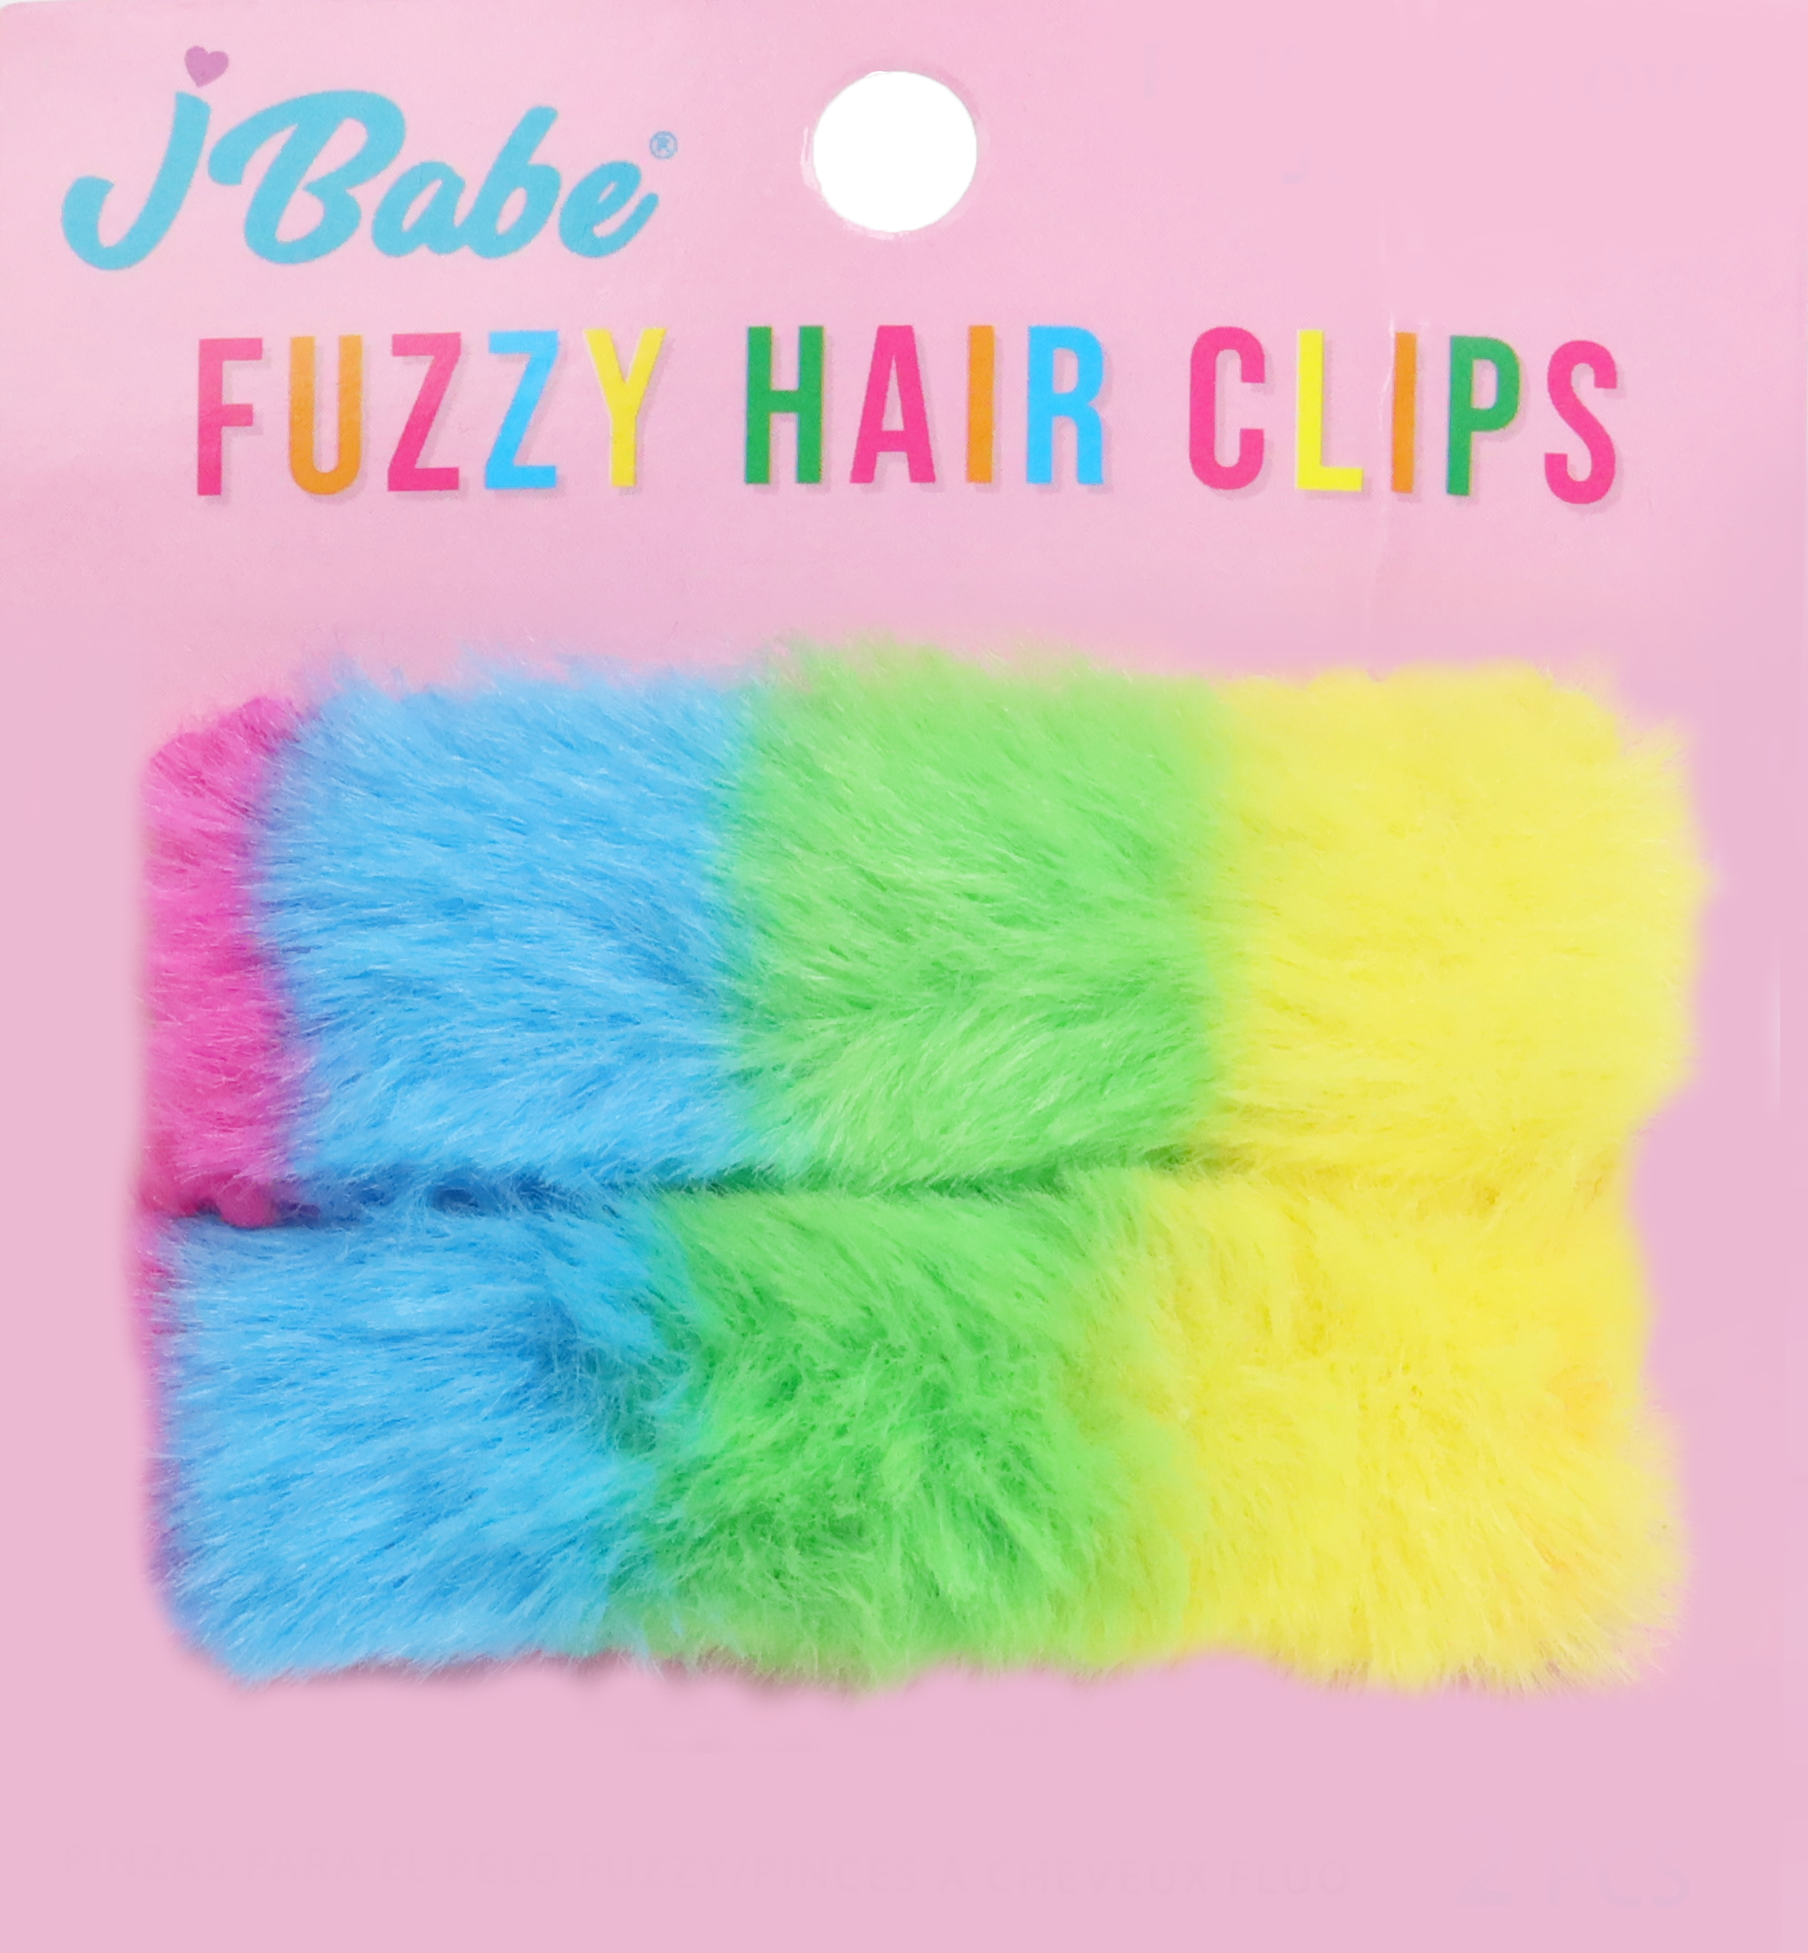 Fuzzy Hair Clips